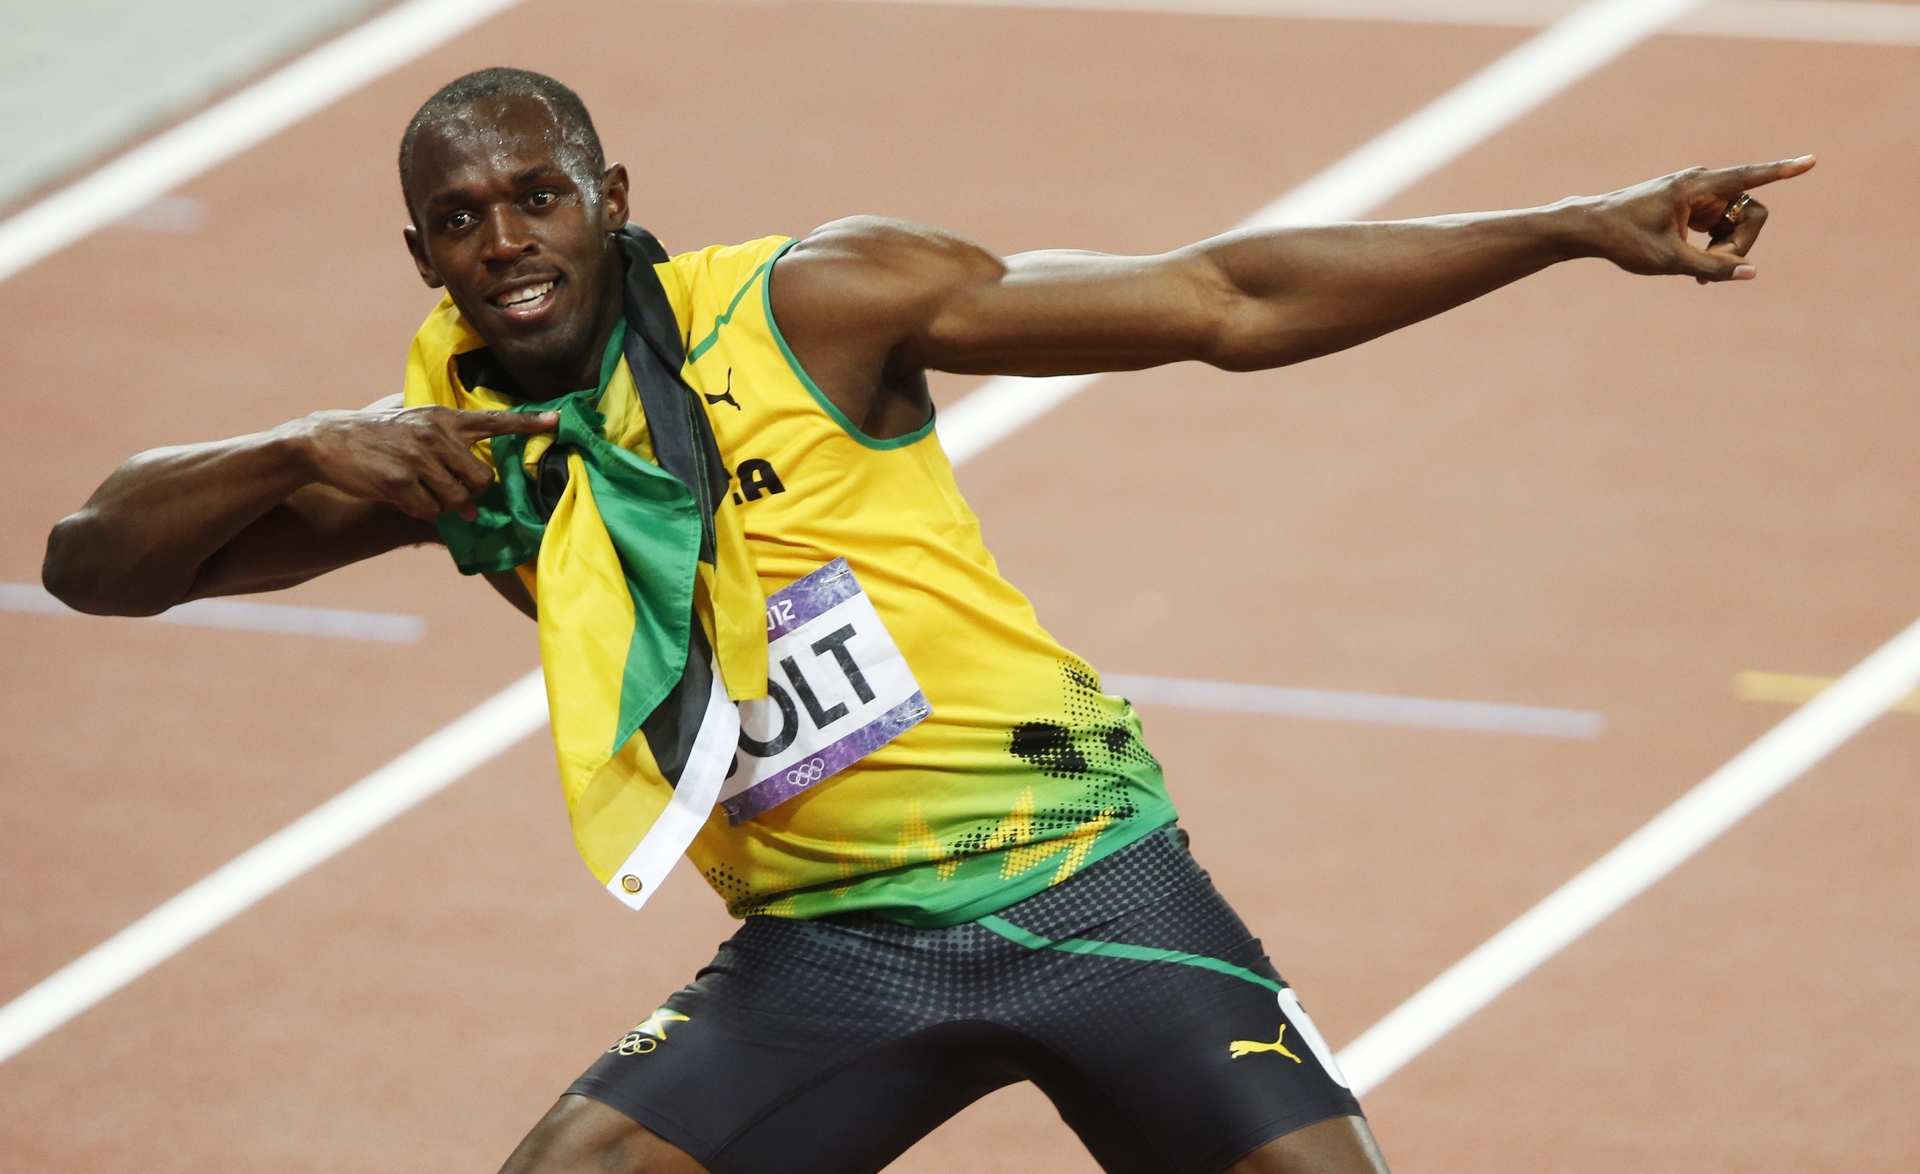 3ème médaille d'or dans ces Jeux de Londres pour le Jamaïcain Usain Bolt.